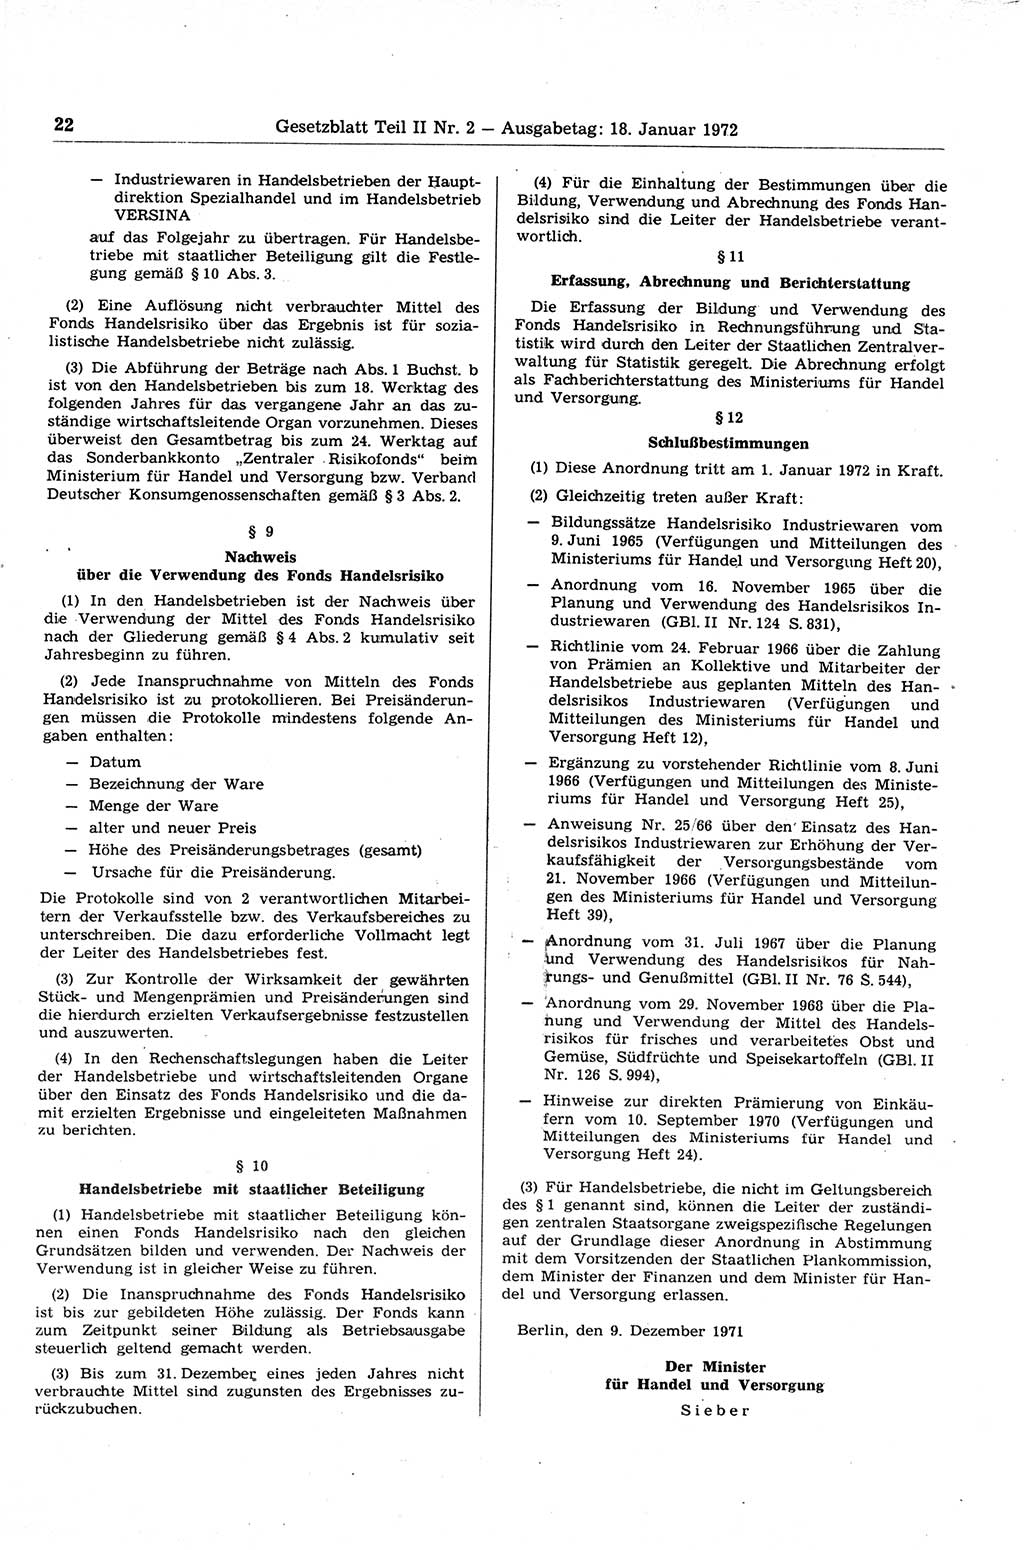 Gesetzblatt (GBl.) der Deutschen Demokratischen Republik (DDR) Teil ⅠⅠ 1972, Seite 22 (GBl. DDR ⅠⅠ 1972, S. 22)